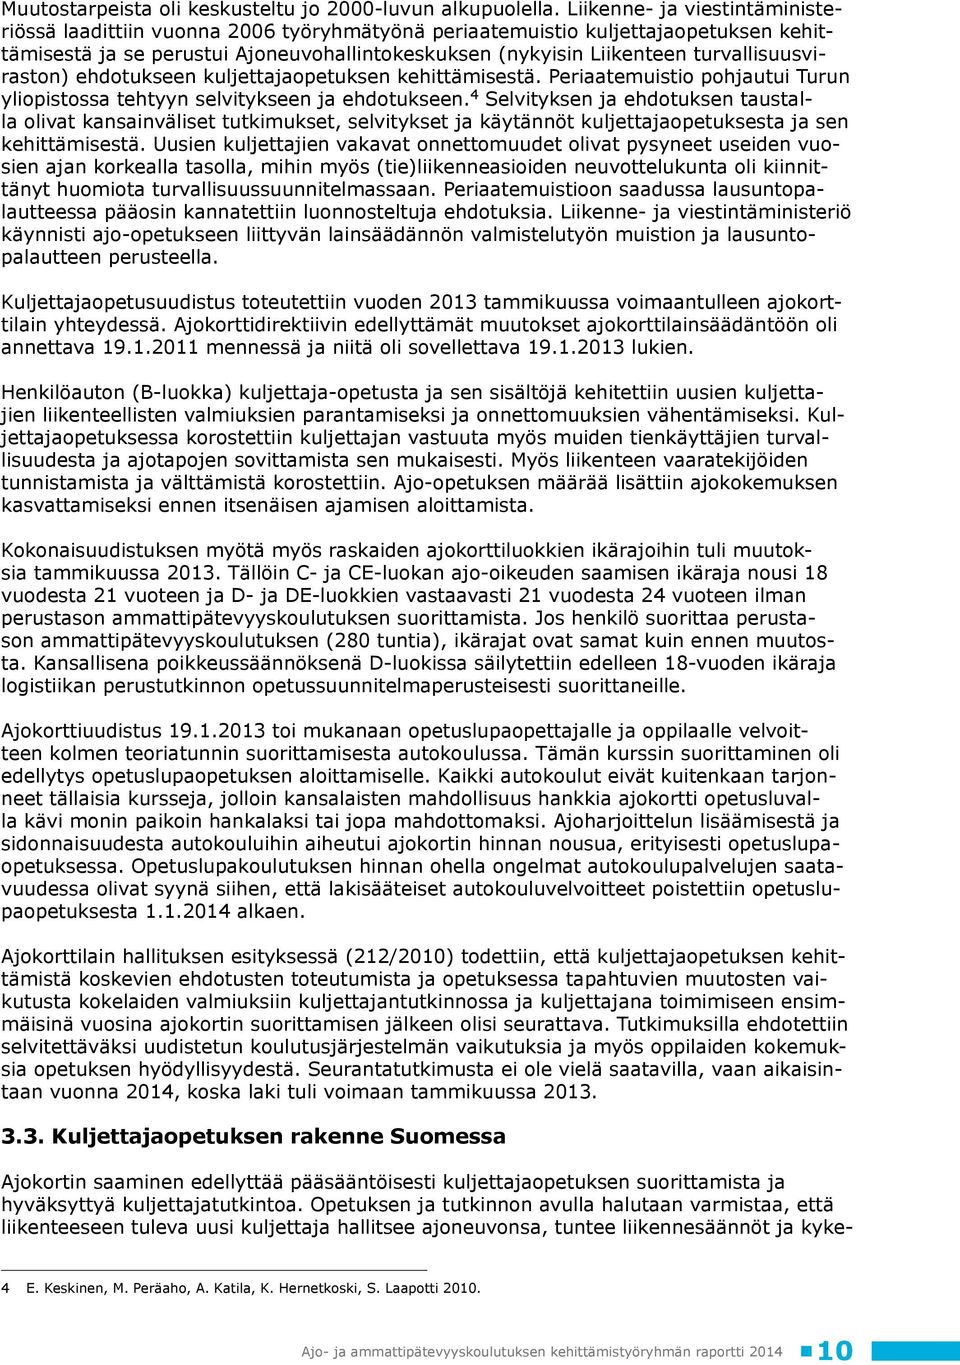 turvallisuusviraston) ehdotukseen kuljettajaopetuksen kehittämisestä. Periaatemuistio pohjautui Turun yliopistossa tehtyyn selvitykseen ja ehdotukseen.